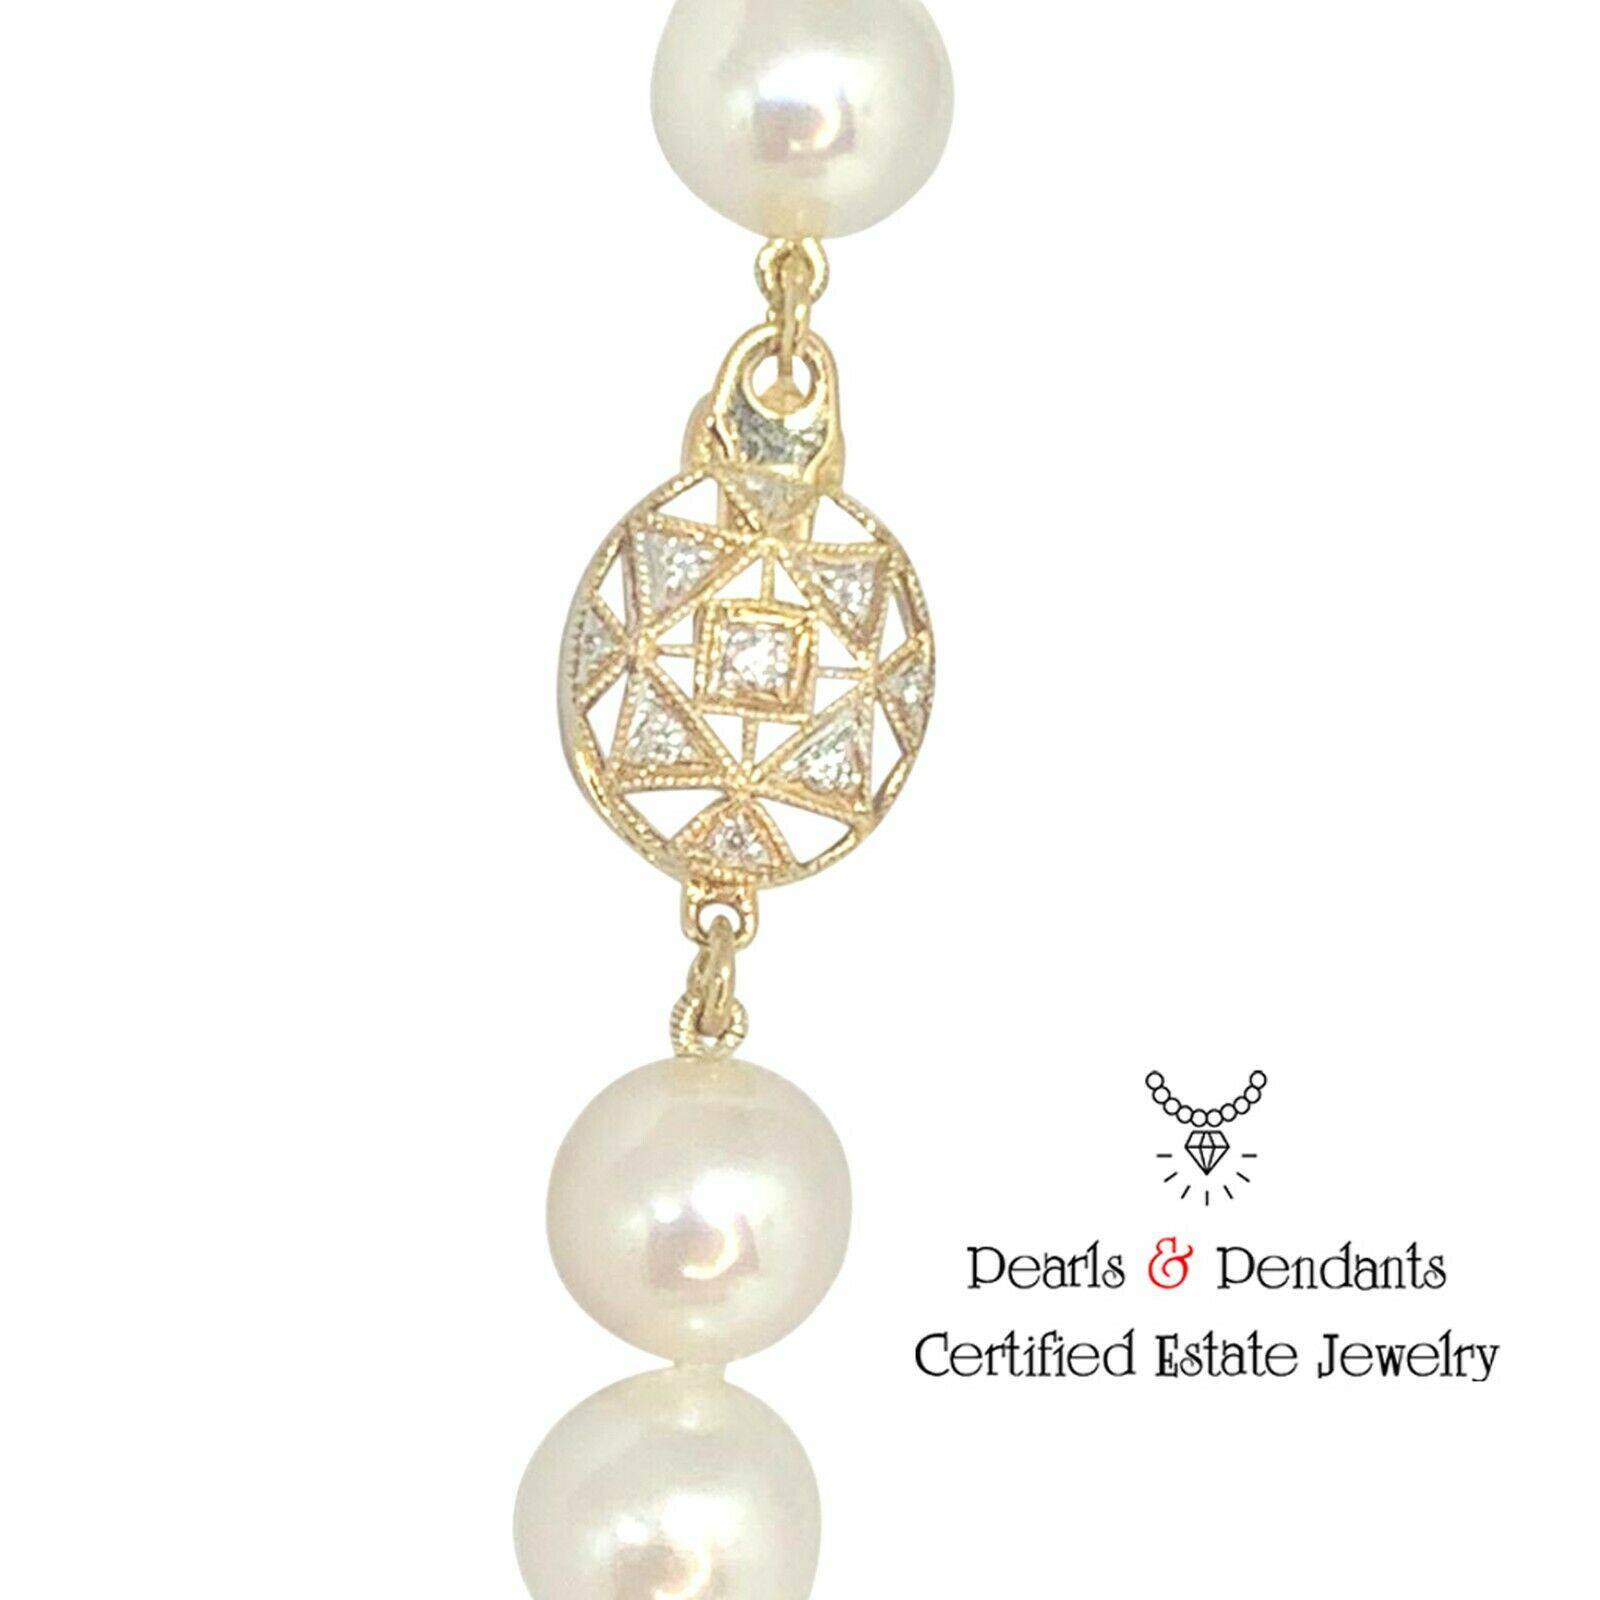 Diamond Akoya Pearl Necklace 14k Gold 8.5 mm 36 in Certified $9,750 010932 - Certified Fine Jewelry